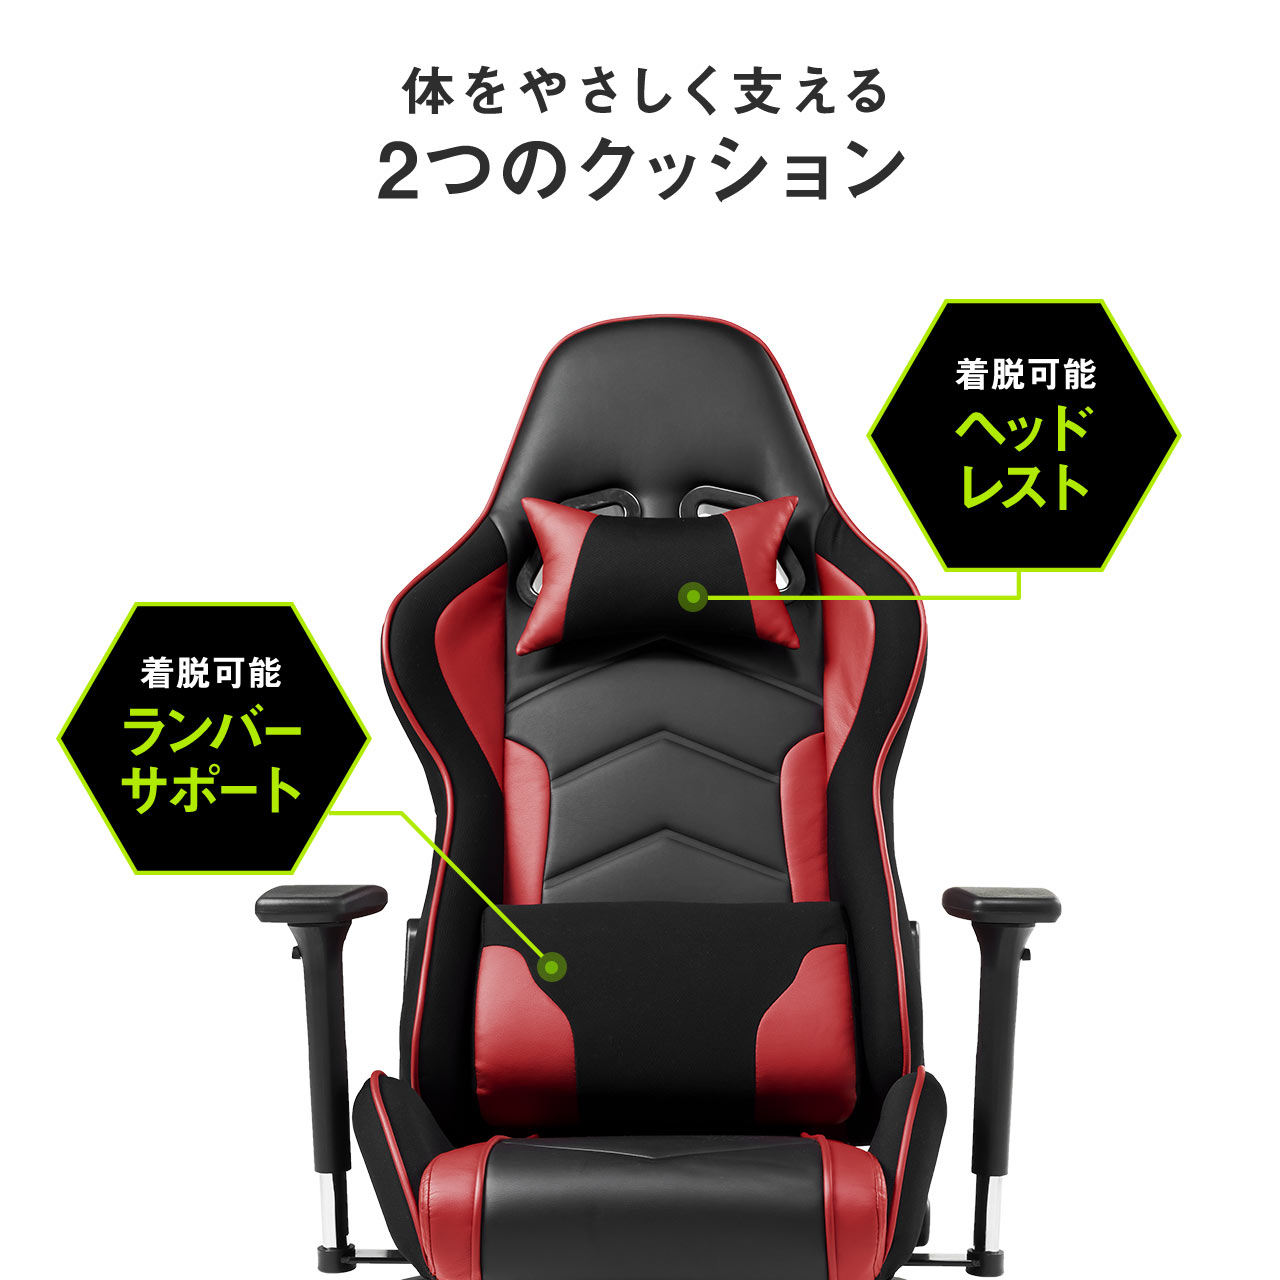 ゲーミング座椅子(リクライニング・肘付き・レバー式・ゲーミングチェア・360度回転・ブラック/グレー） 150-SNCF005GY